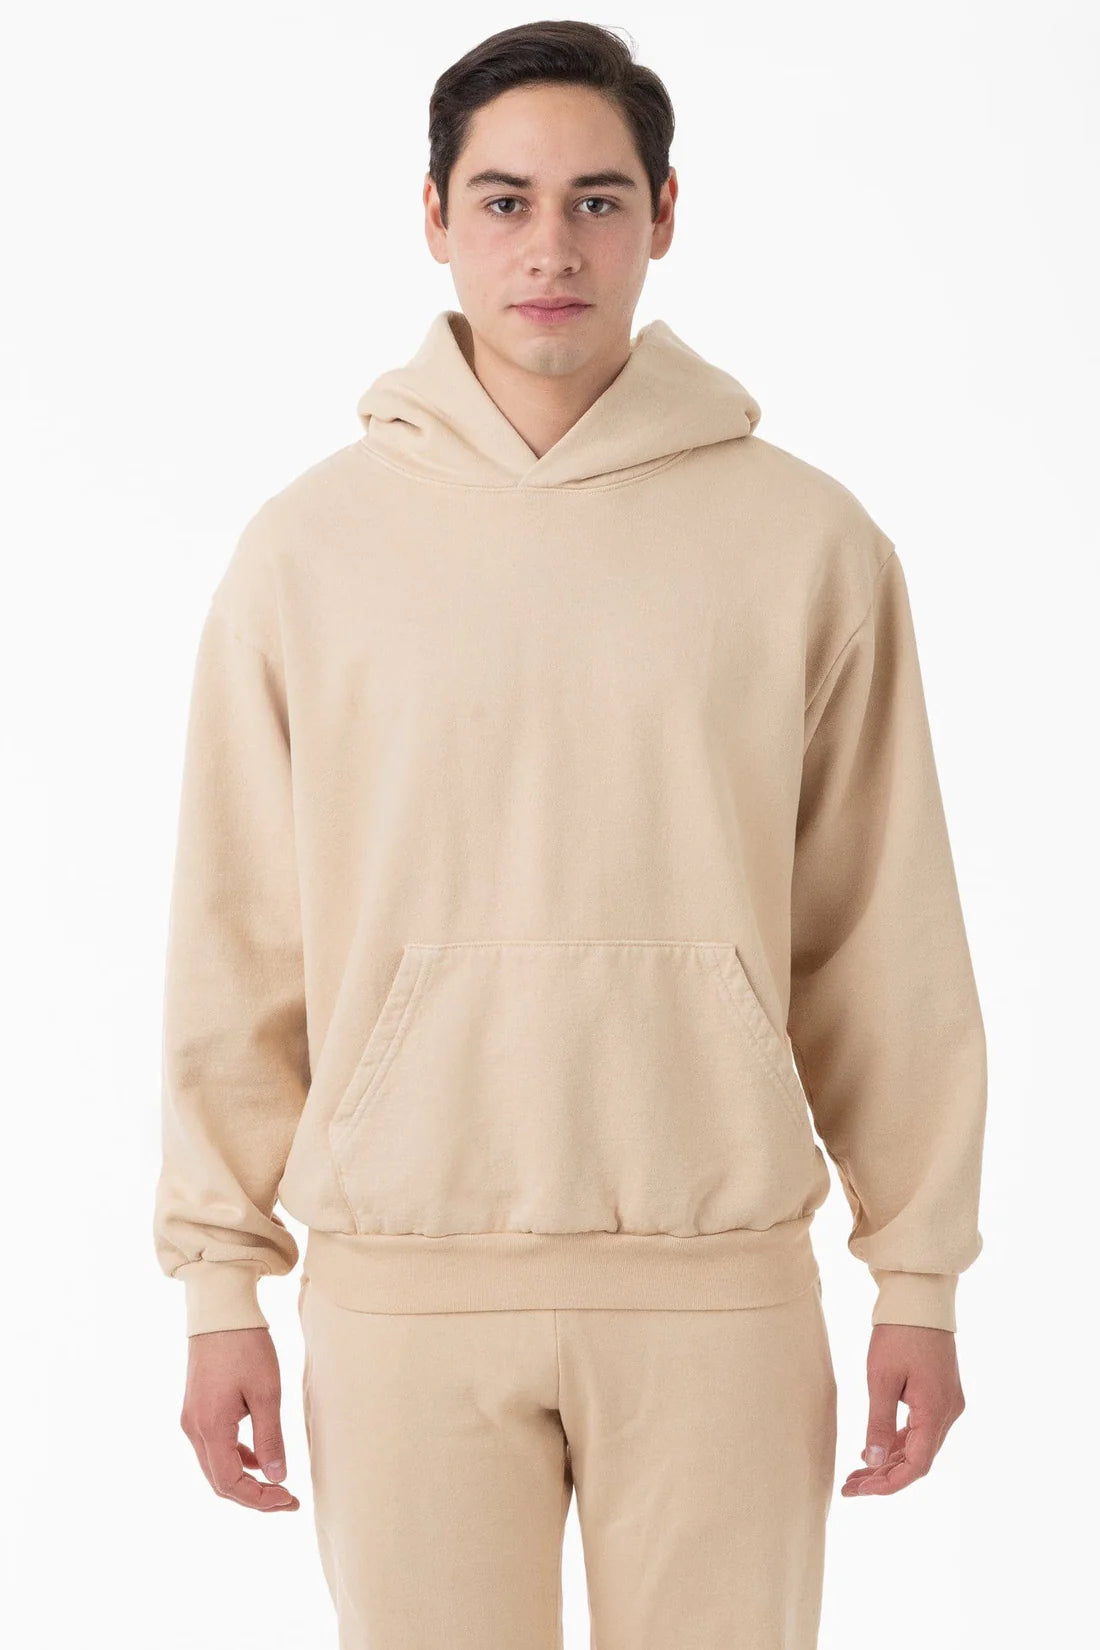 Los Angeles Apparel - HF09GD - Heavy Fleece Hooded Pullover Sweatshirt –  Sky Sportswear